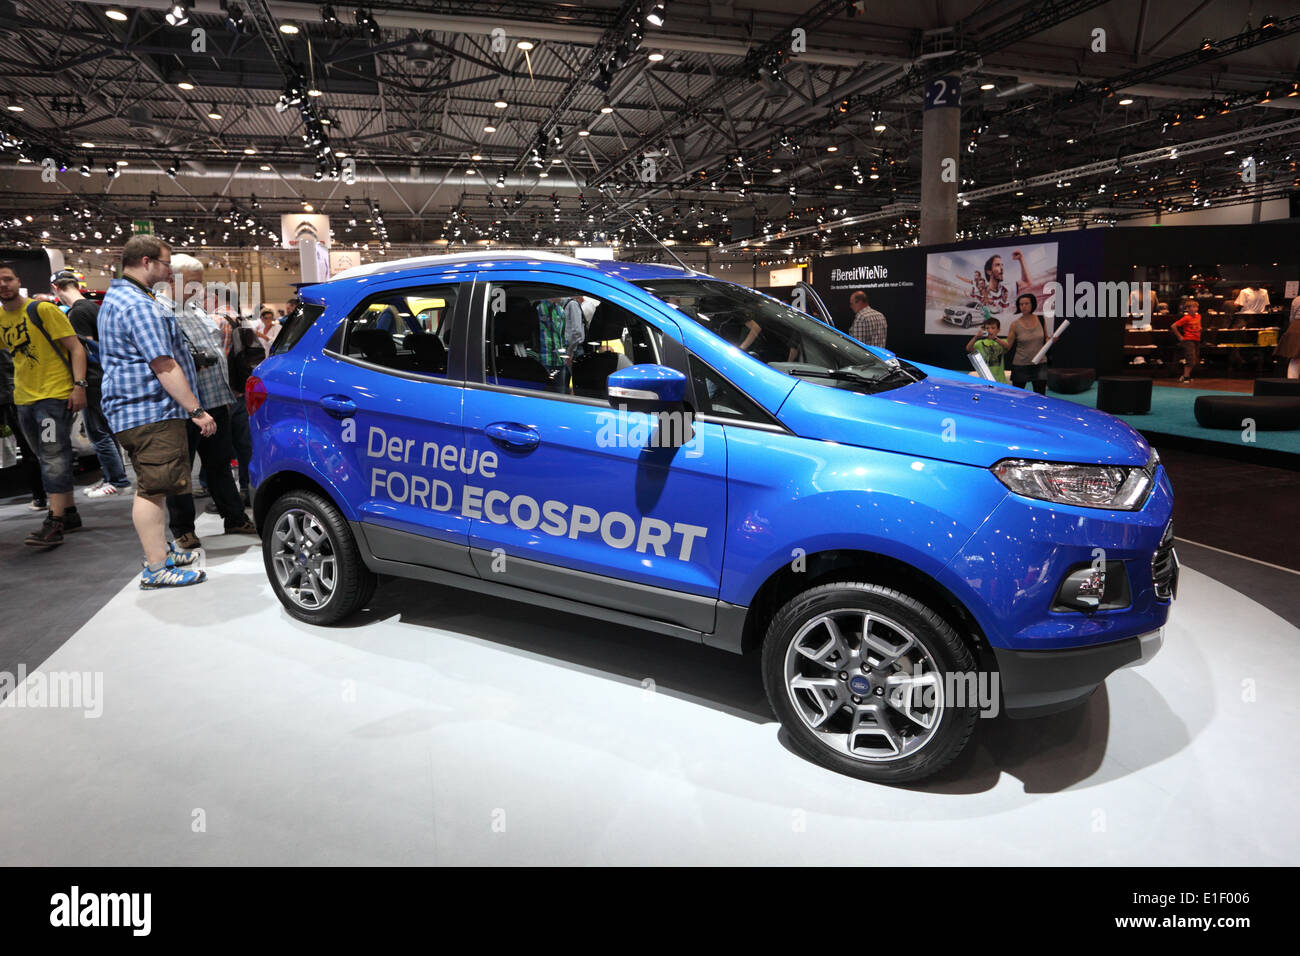 Nouvelle Ford Ecosport à l'AMI - Salon International de l'Auto Mobile le 1er juin 2014 à Leipzig, Saxe, Allemagne Banque D'Images